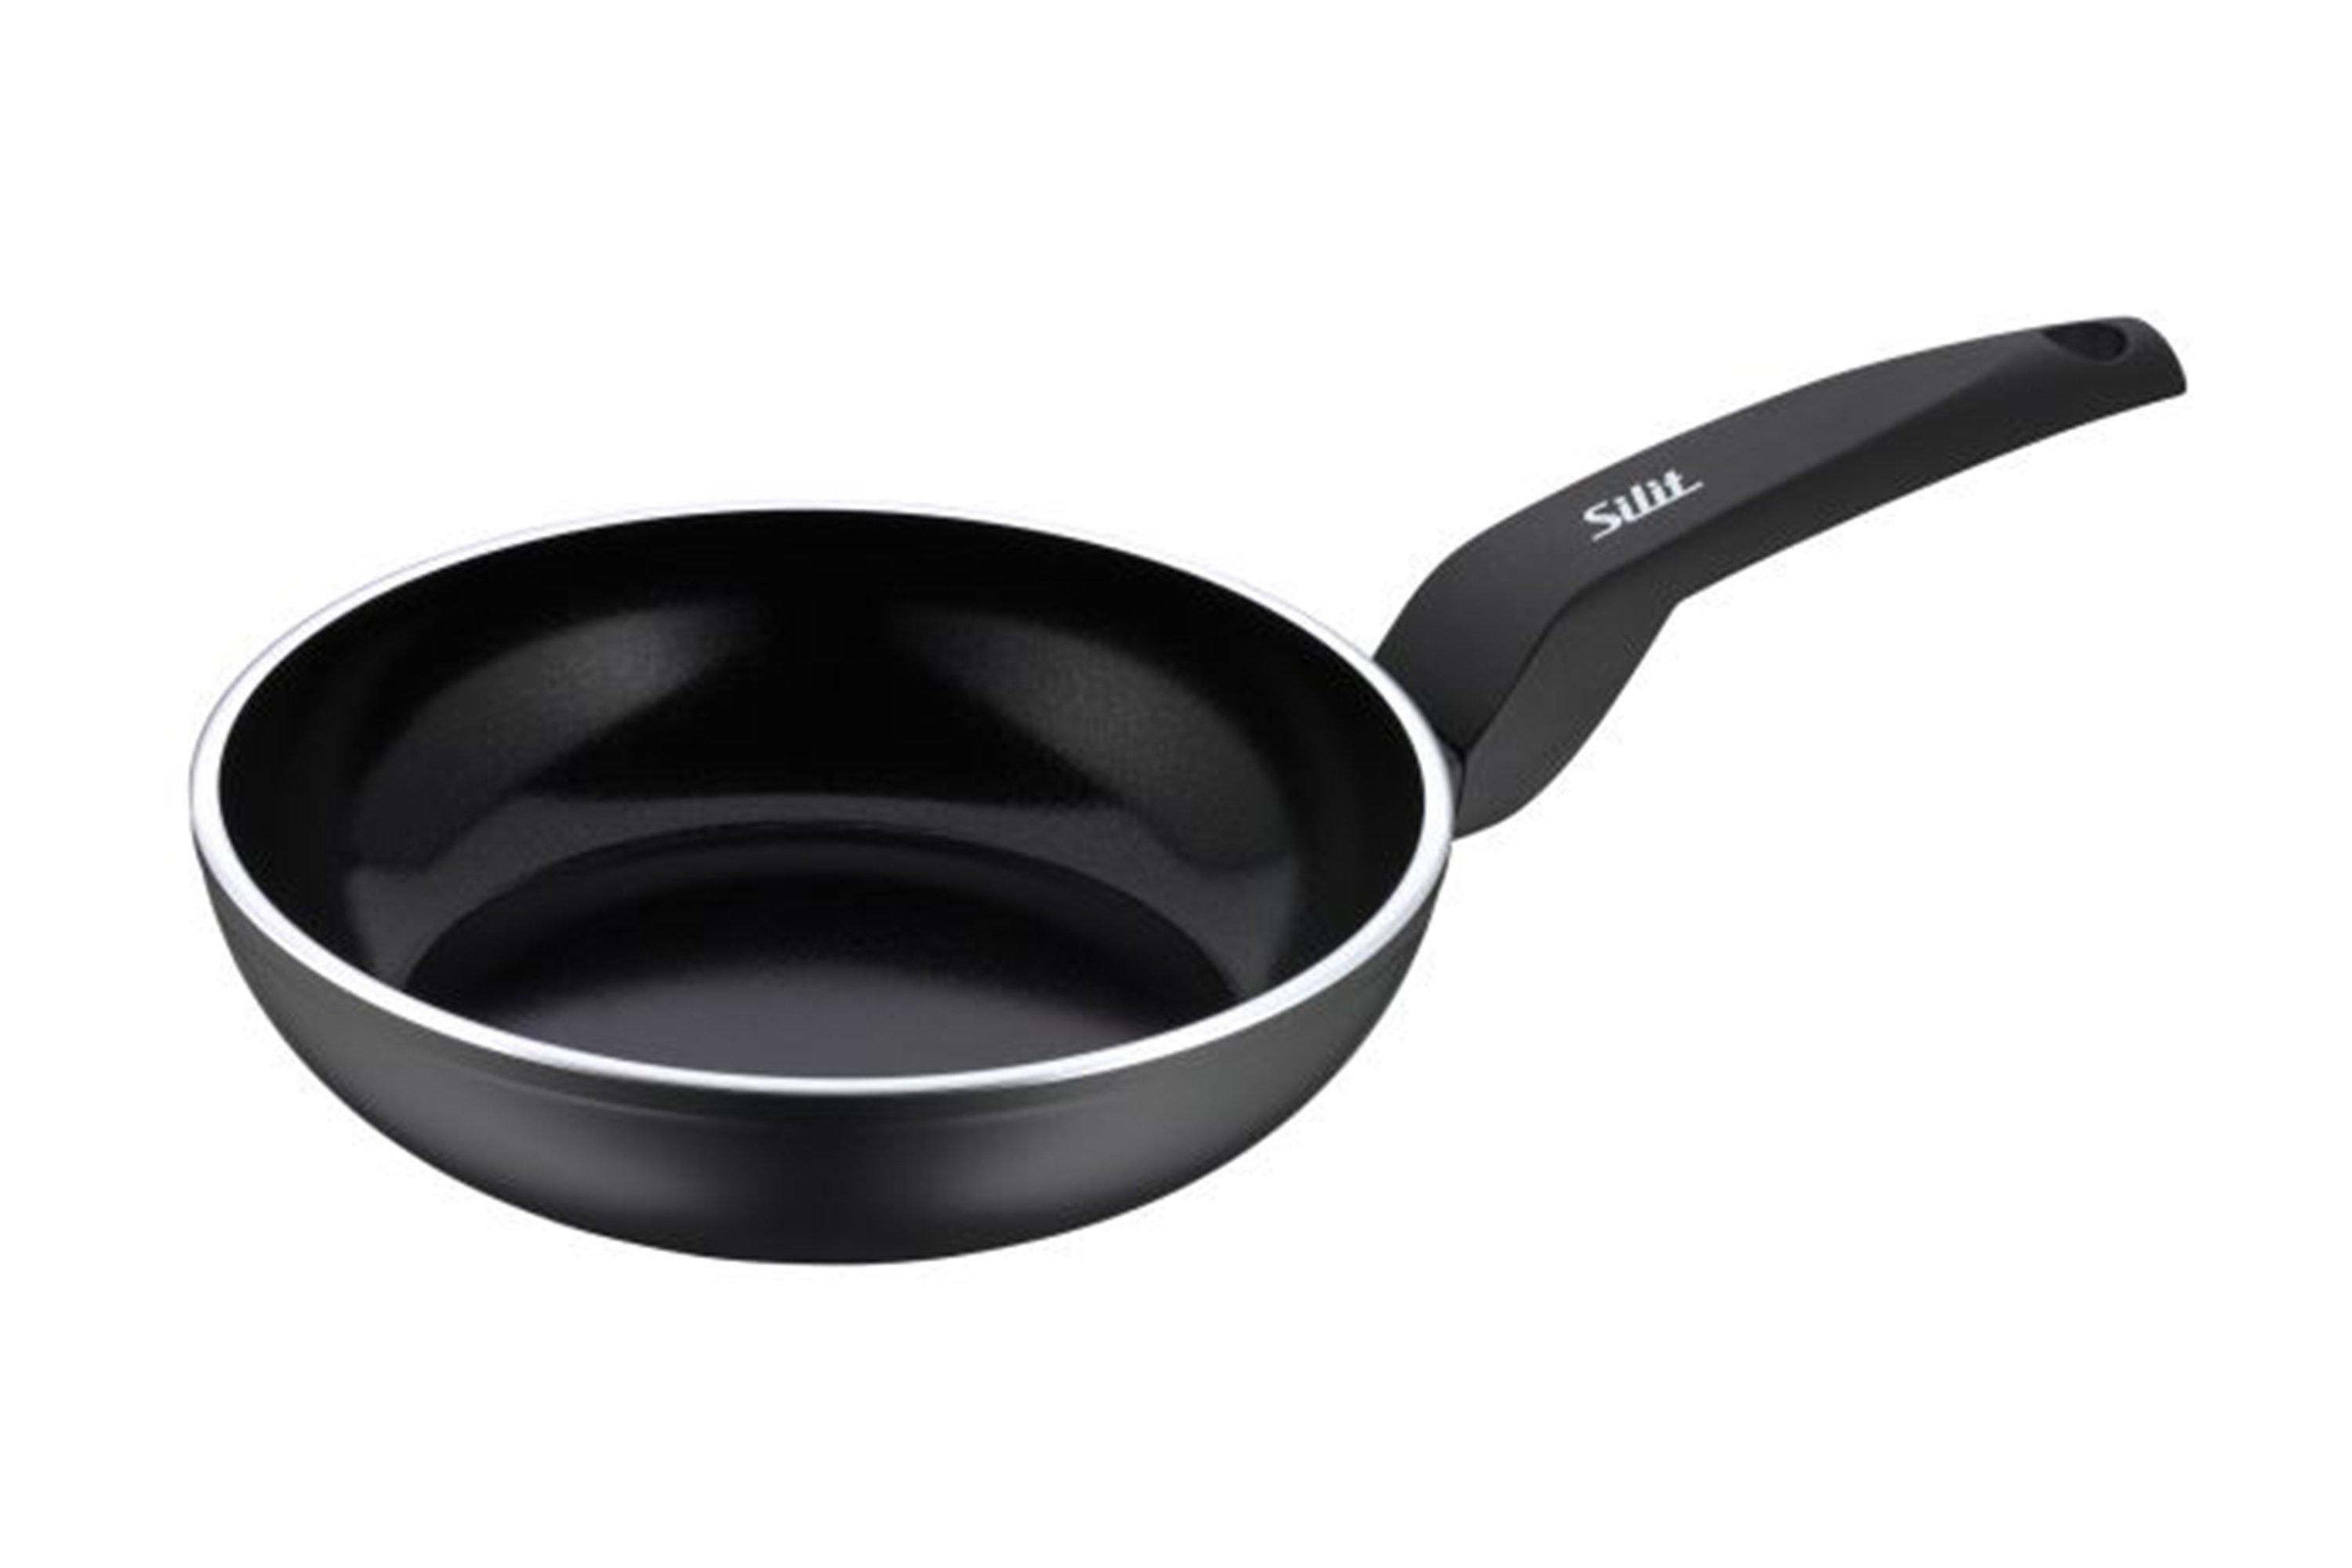 WMF Silit Messino 2110300359 frying pan, 24 cm | Advantageously at Knivesandtools.com